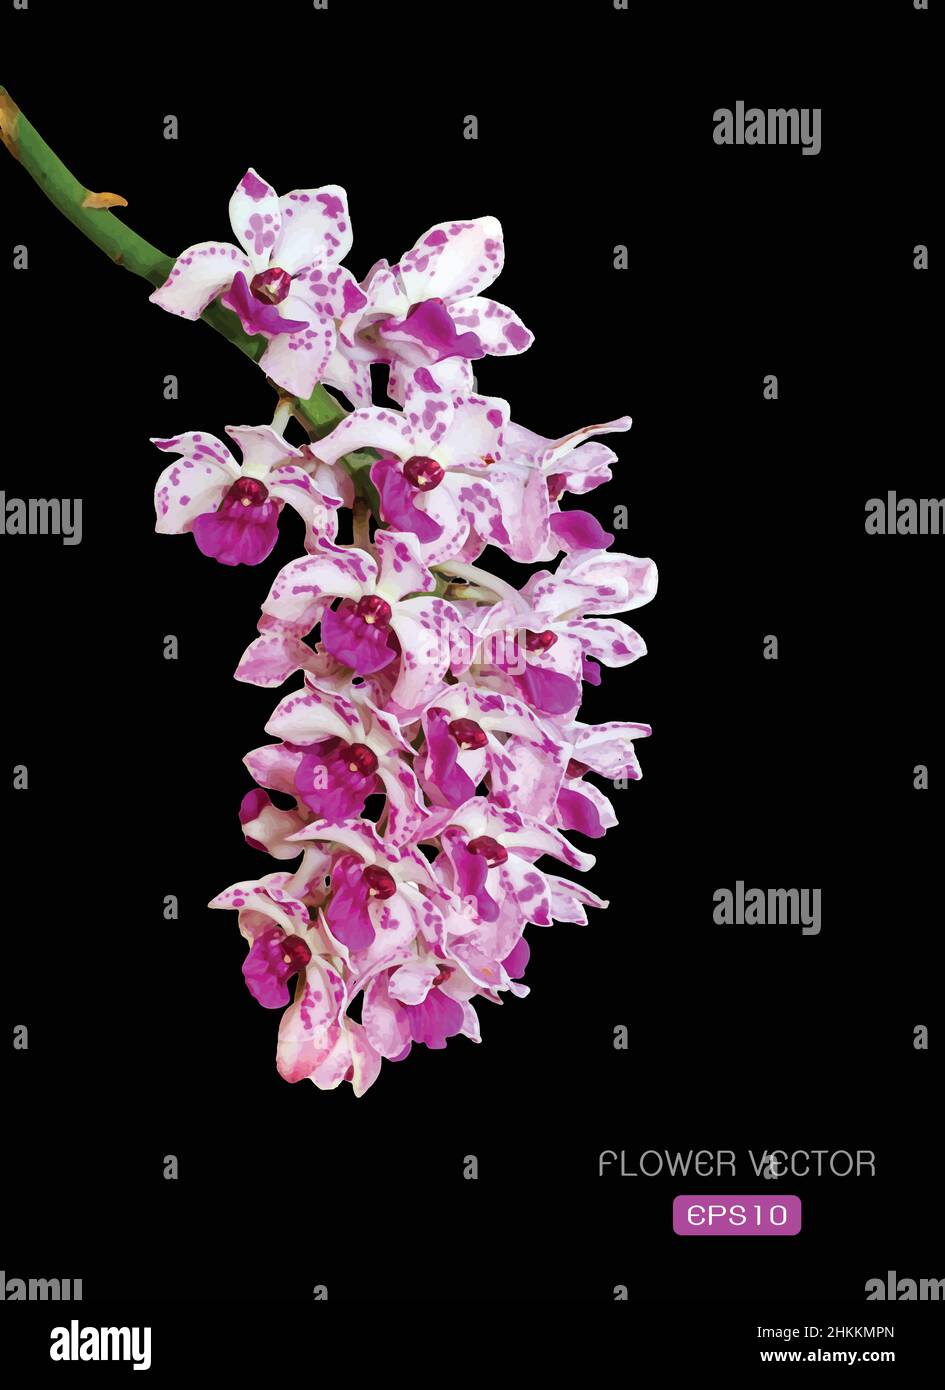 Image vectorielle de la fleur d'orchidée sur fond noir.Illustration vectorielle superposée facile à modifier. Illustration de Vecteur